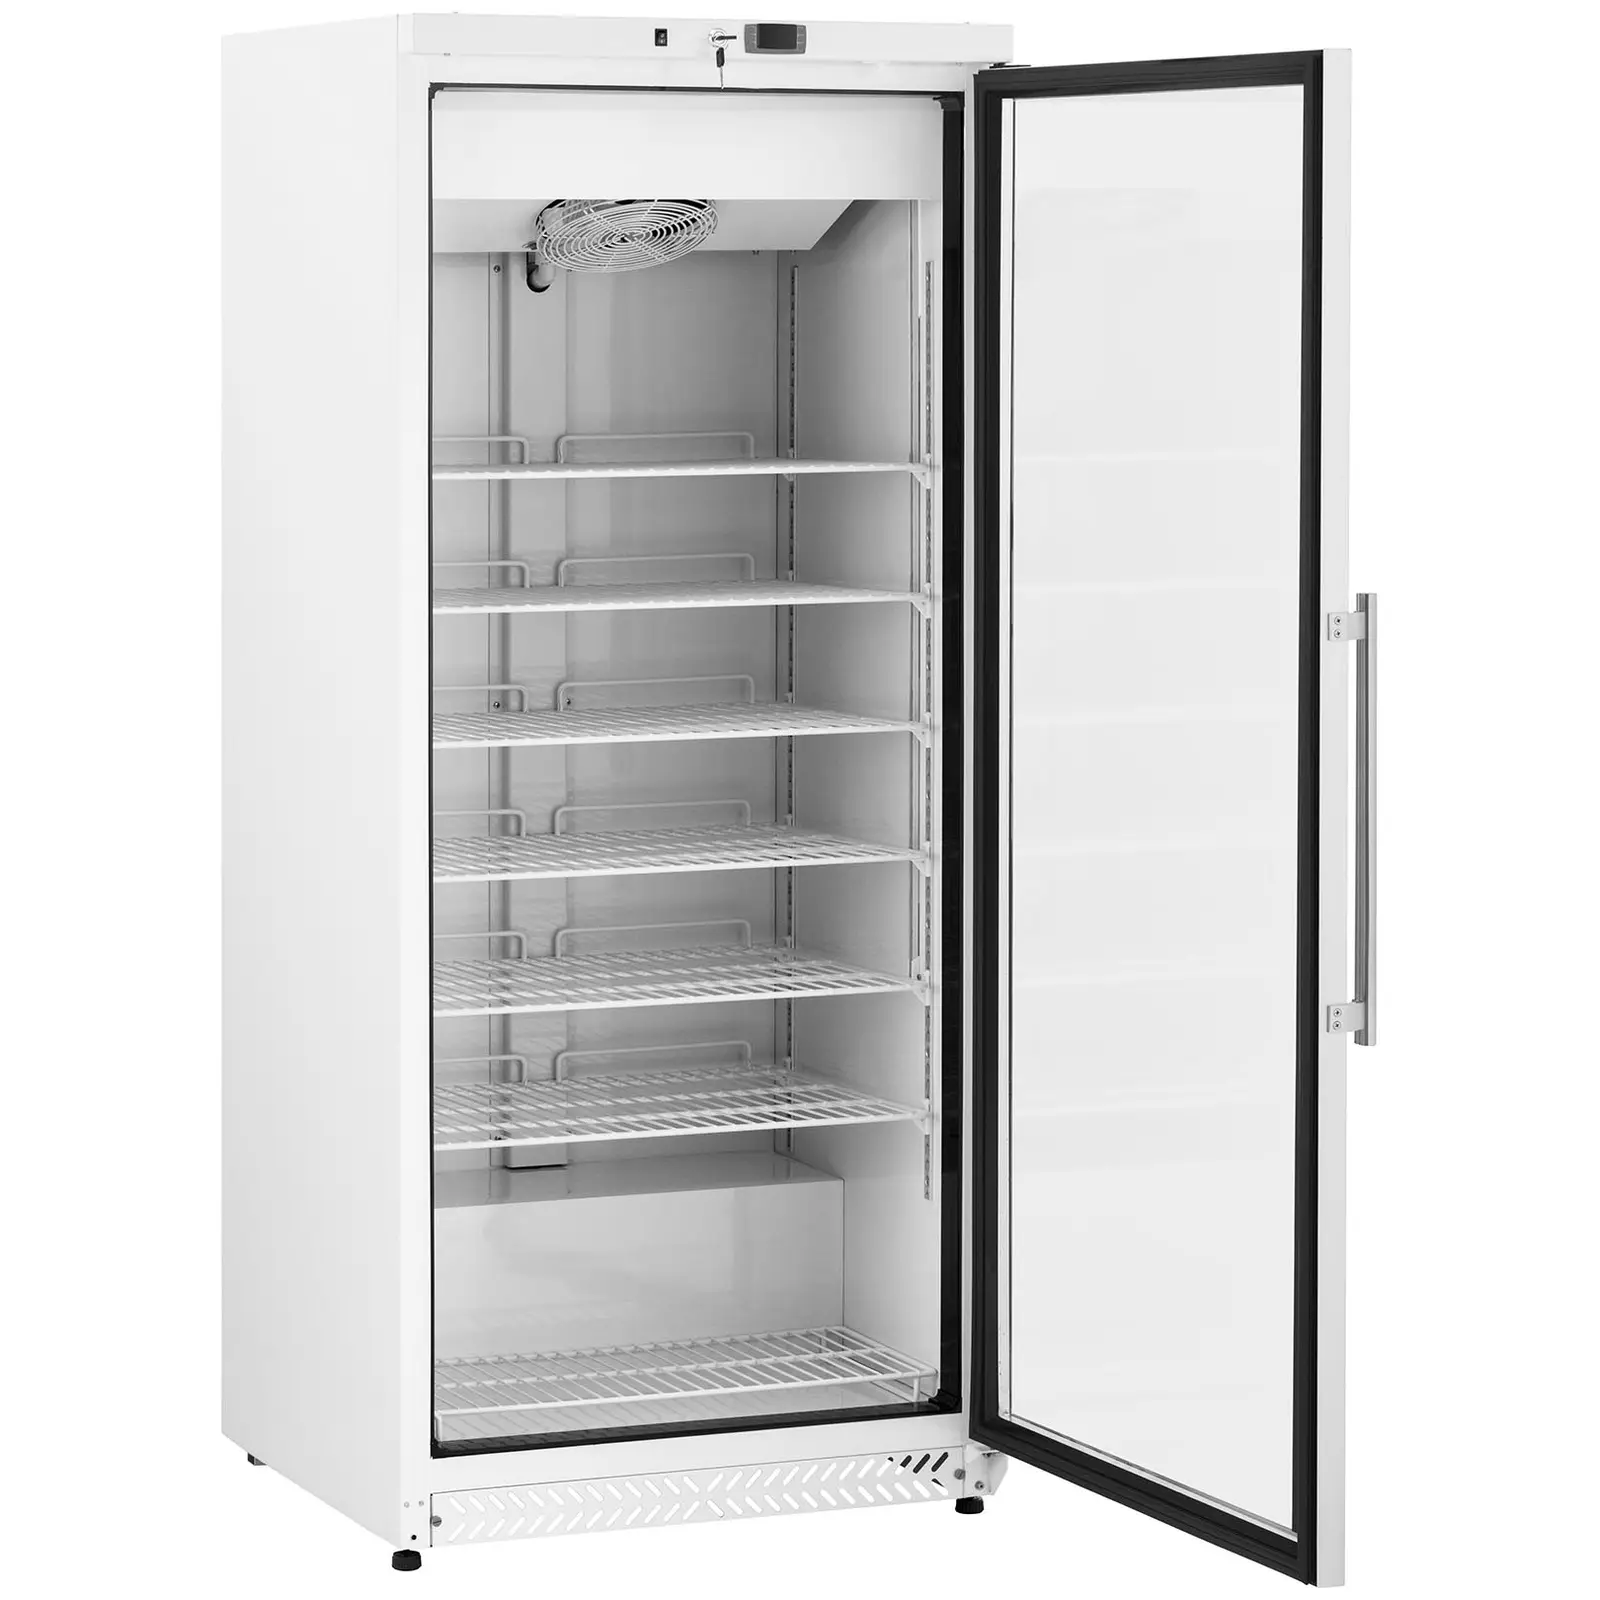 Zamrażarka szufladowa - 580 l - Royal Catering - szklane drzwi - srebrna - czynnik chłodniczy R290